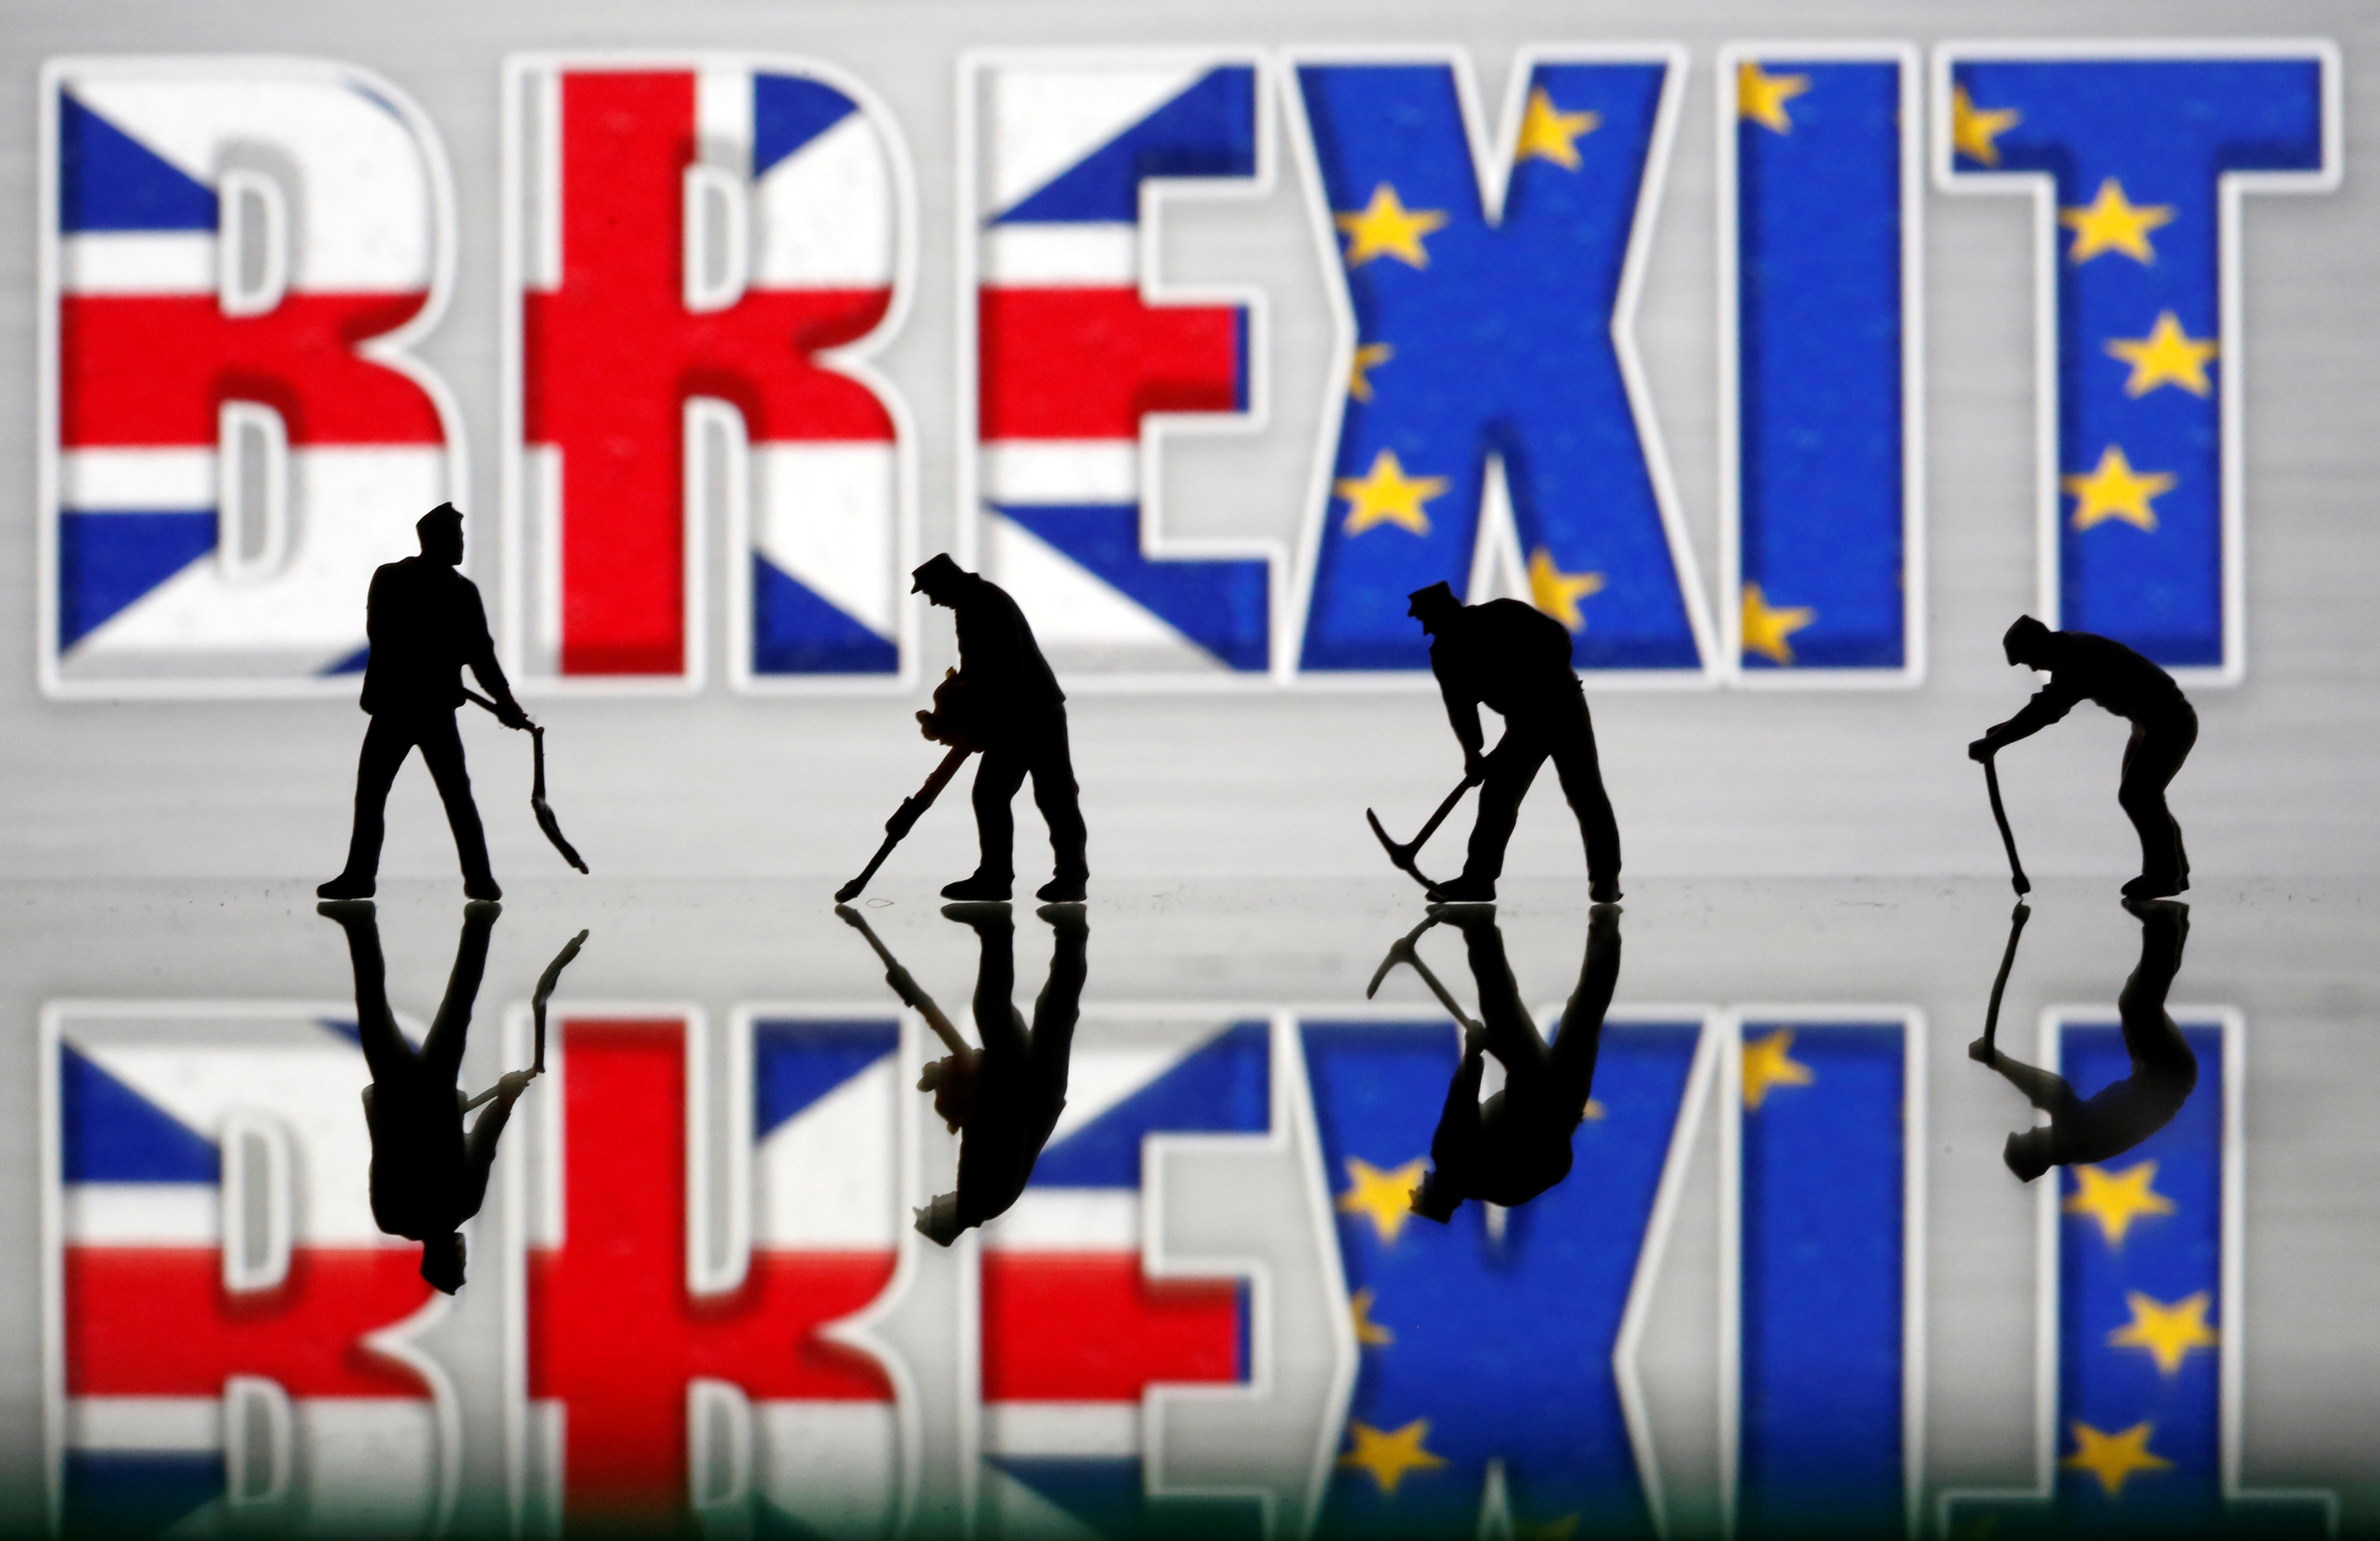 Las bolsas europeas suben ante señales que apuntan a un acuerdo de Brexit inminente